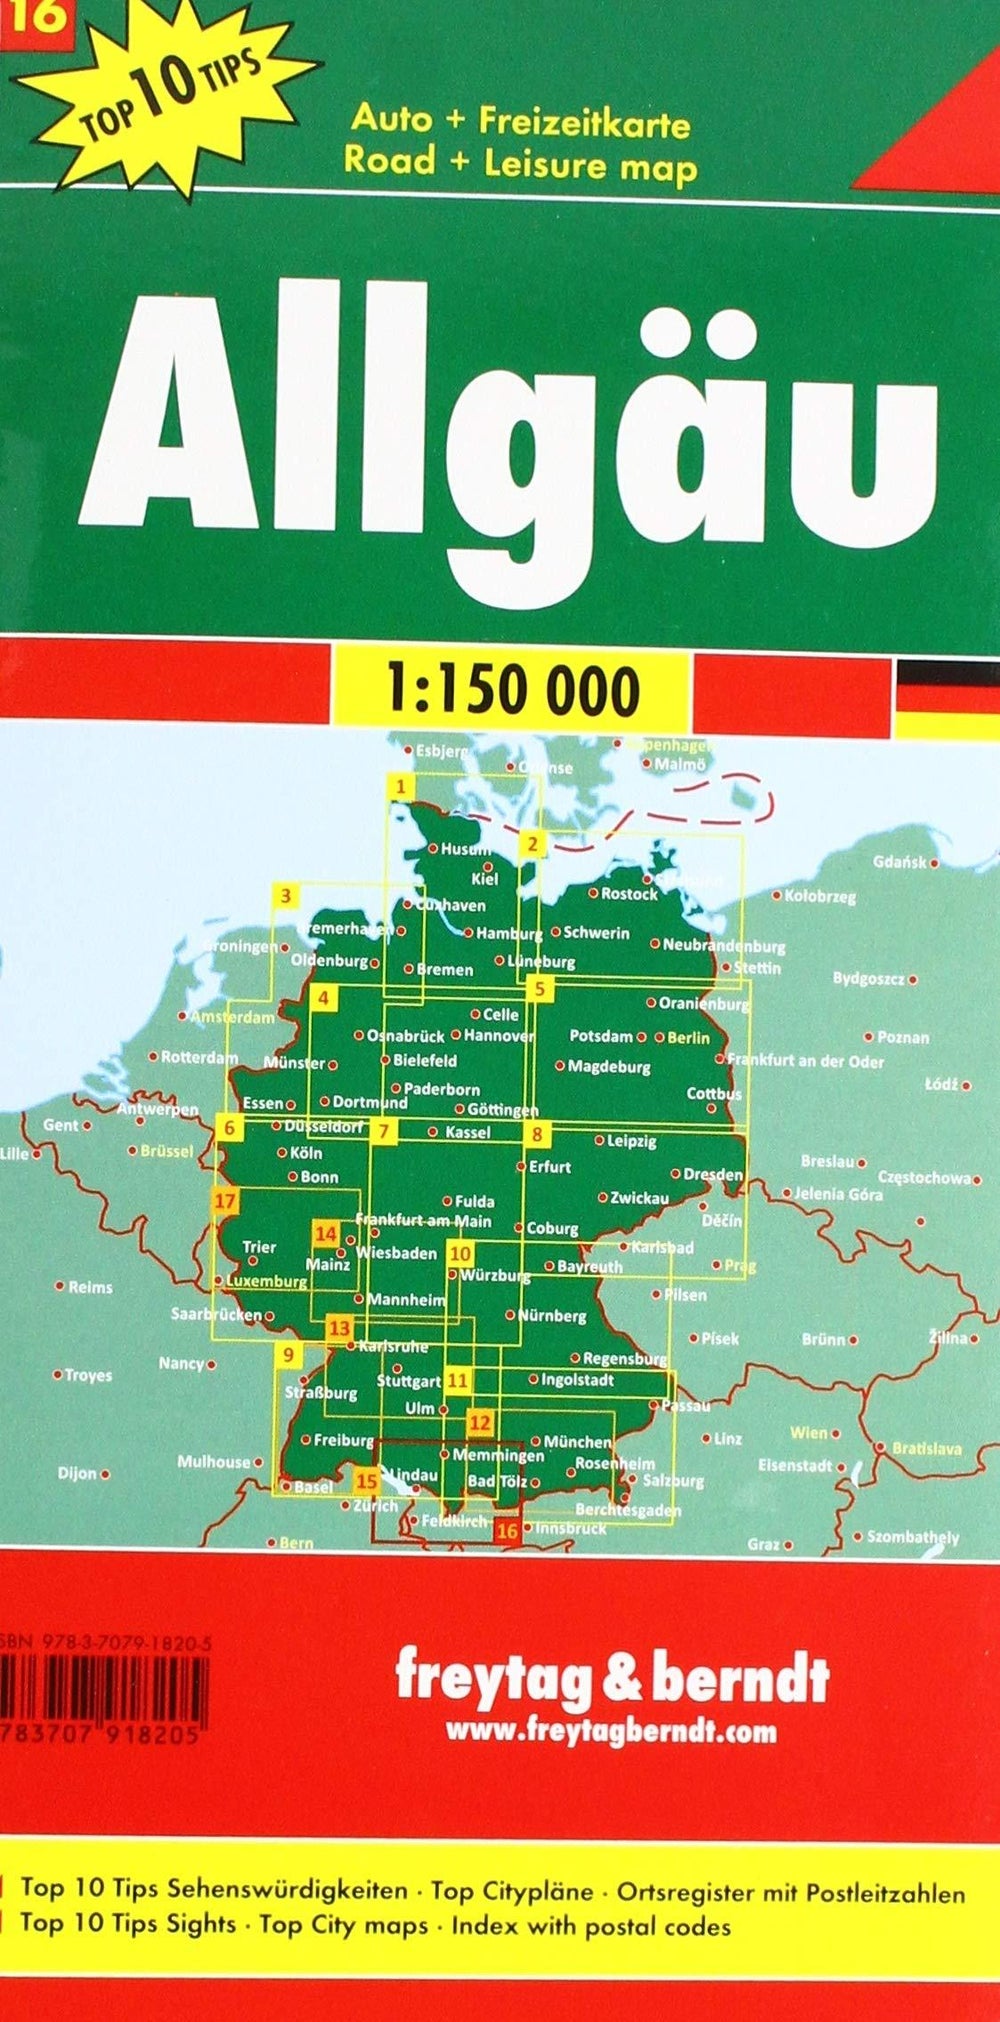 Carte routière - Allgäu (Bade-Wurtemberg), n° 16 | Freytag & Berndt carte pliée Freytag & Berndt 